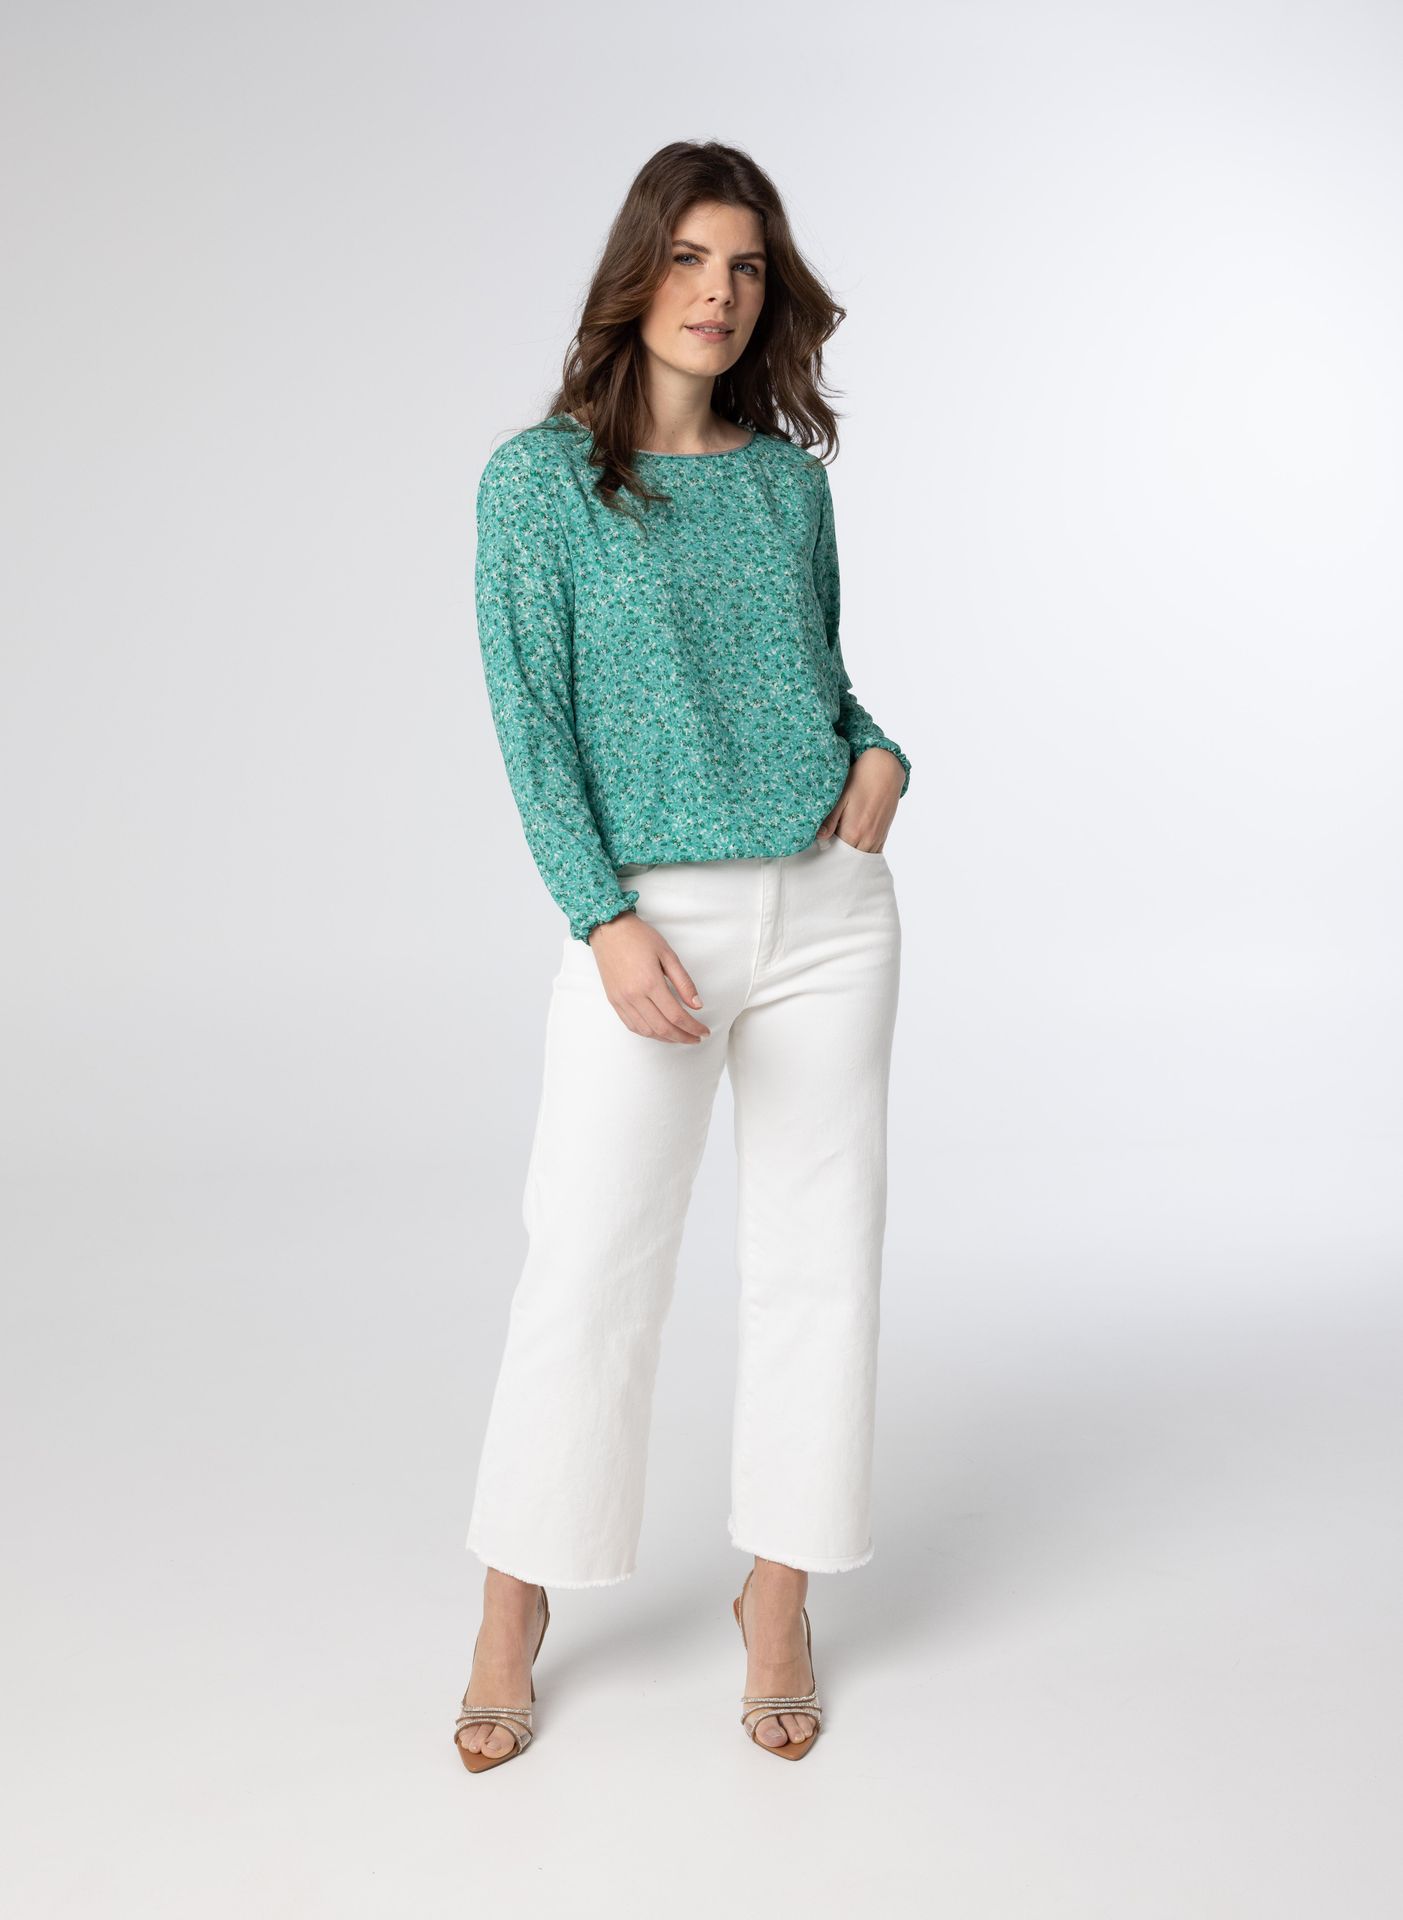 Norah Groene blouse met pofmouwen sea green multicolor 211244-576